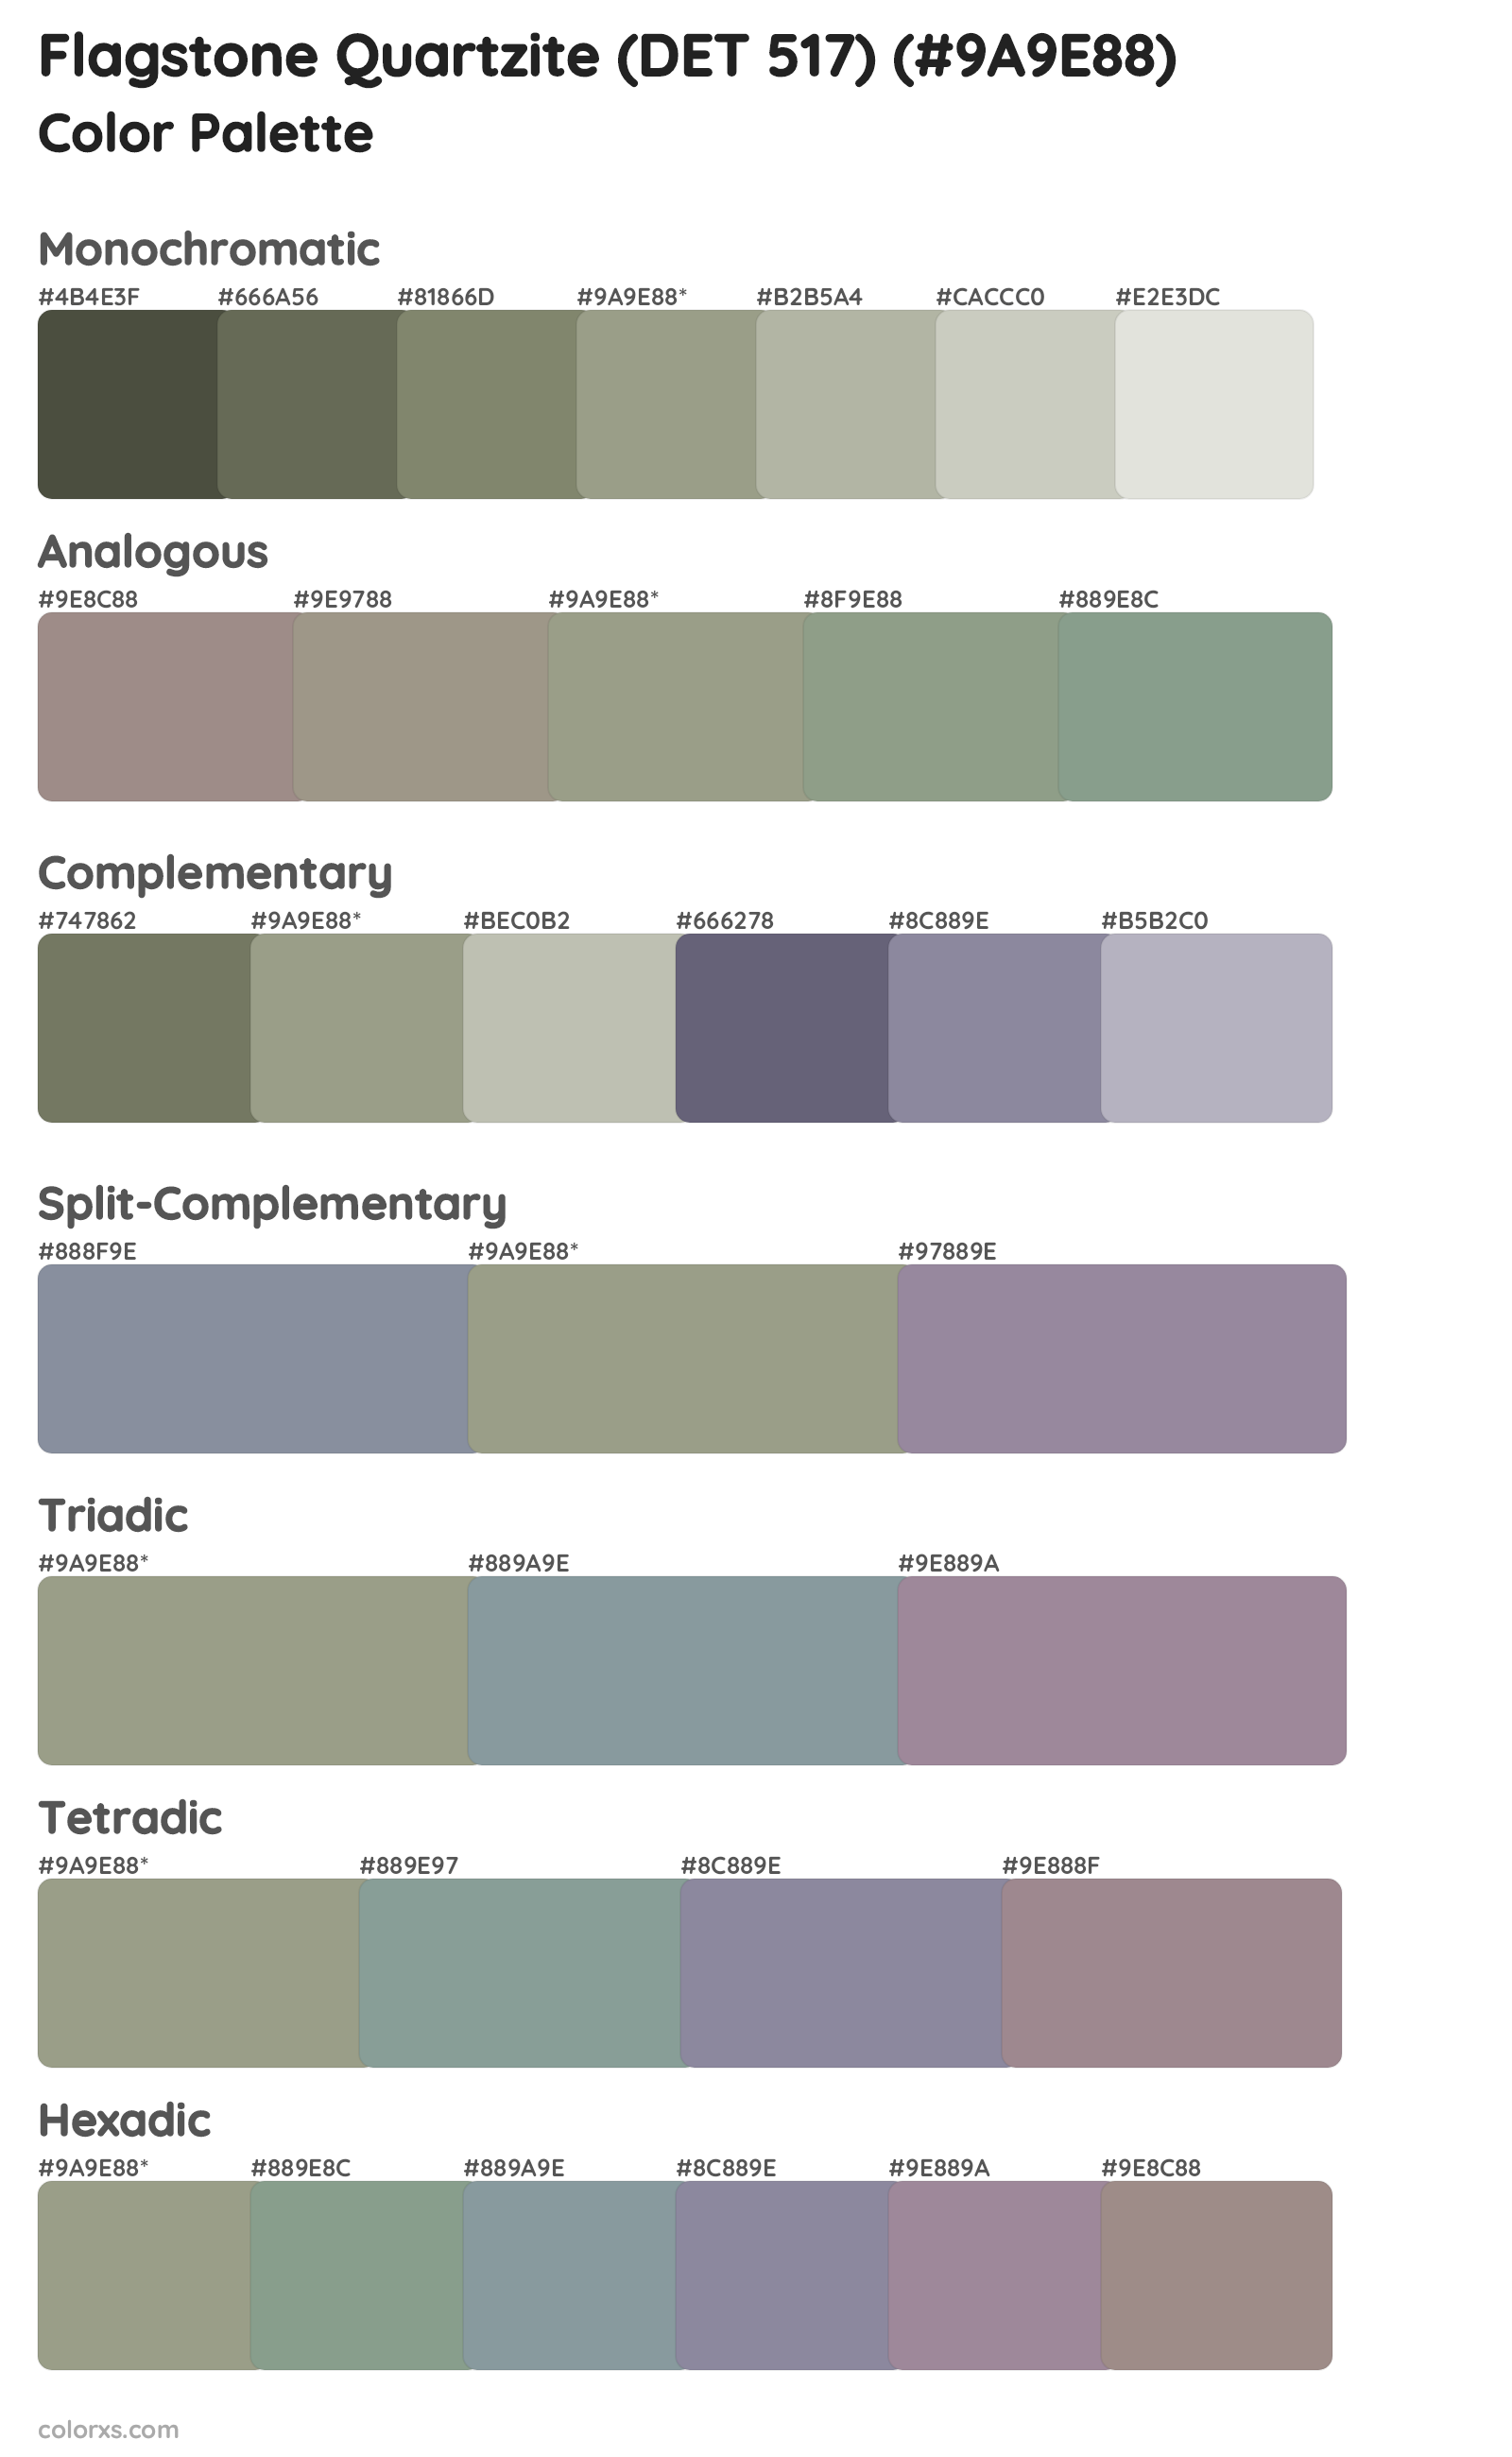 Flagstone Quartzite (DET 517) Color Scheme Palettes